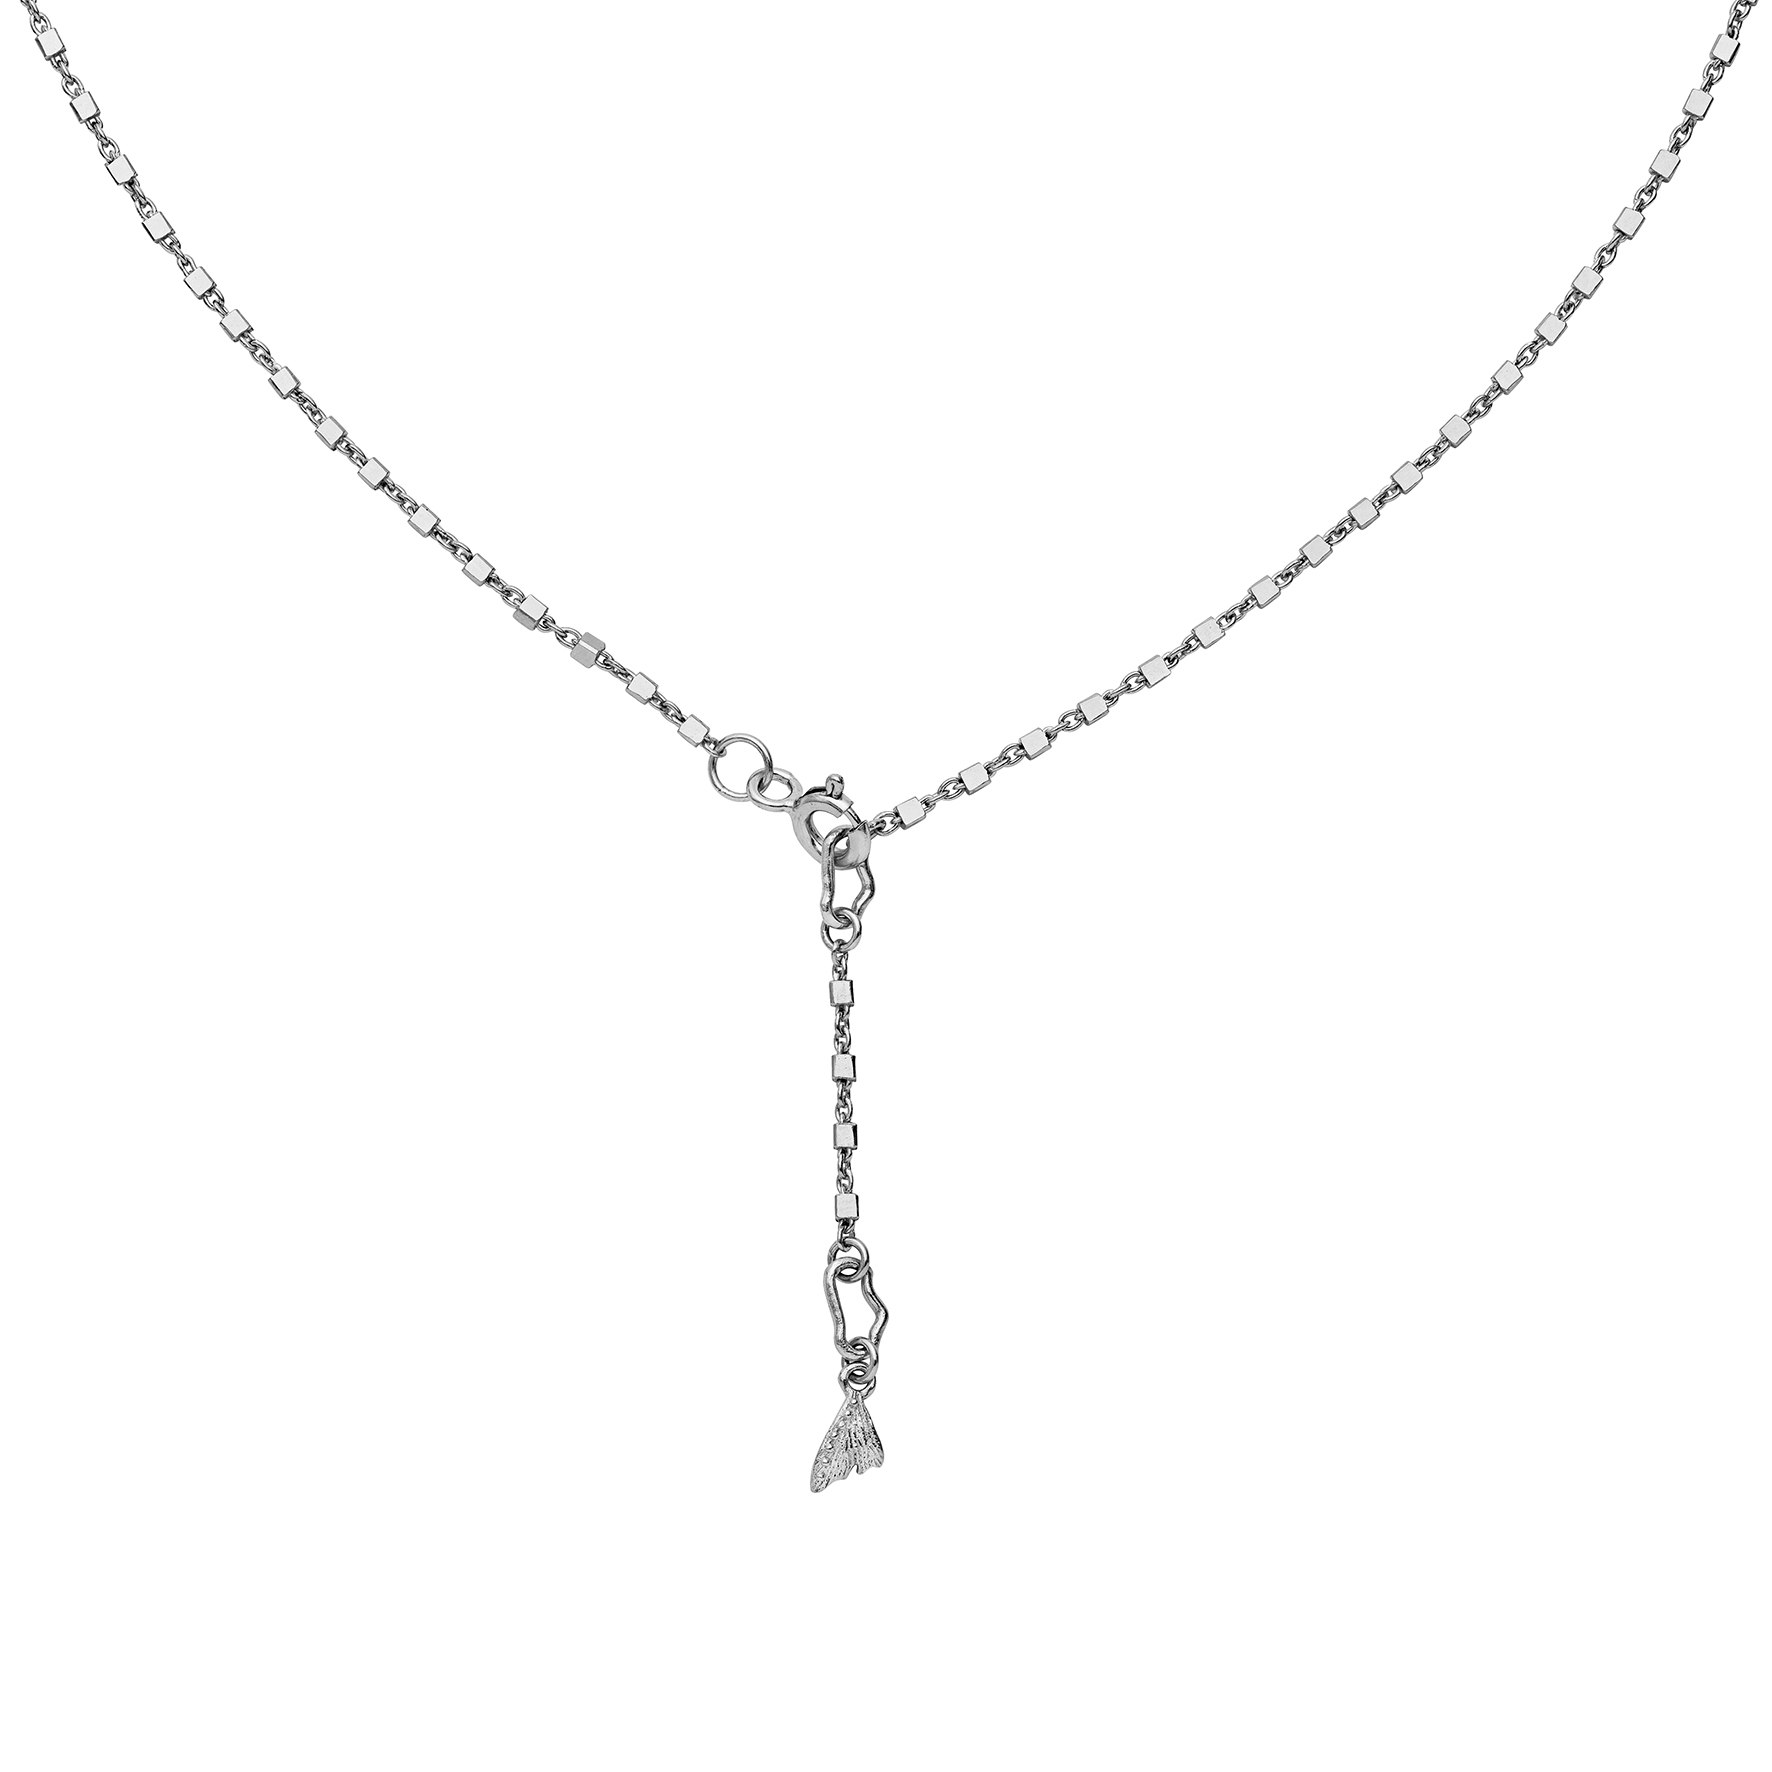 Livi Necklace von Maanesten in Vergoldet-Silber Sterling 925